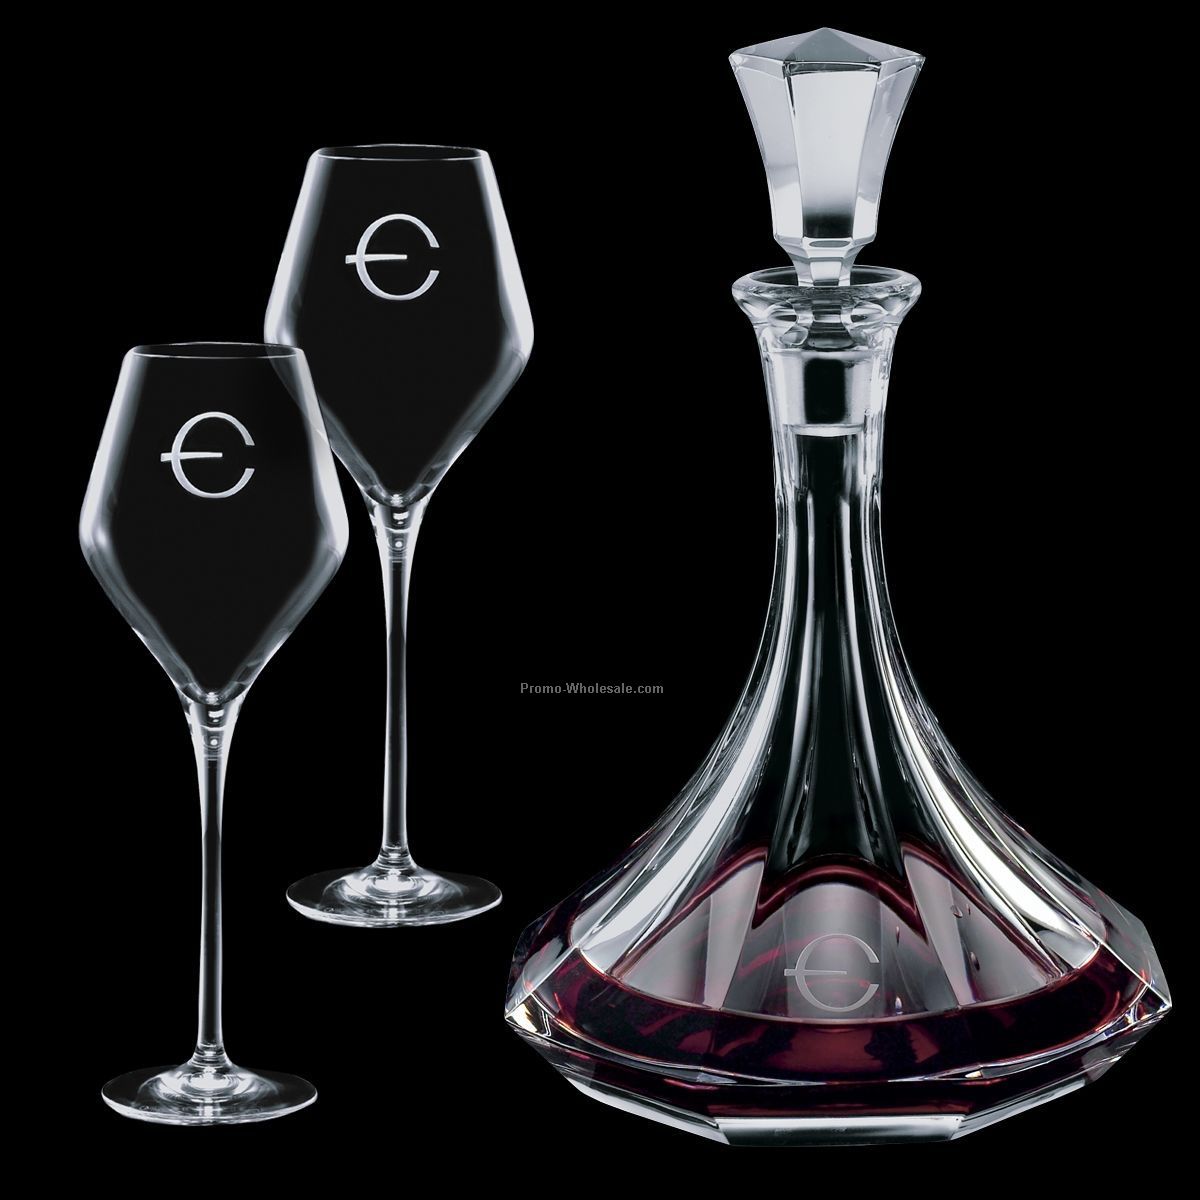 Europa Wine Decanter & 2 Wine Glasses